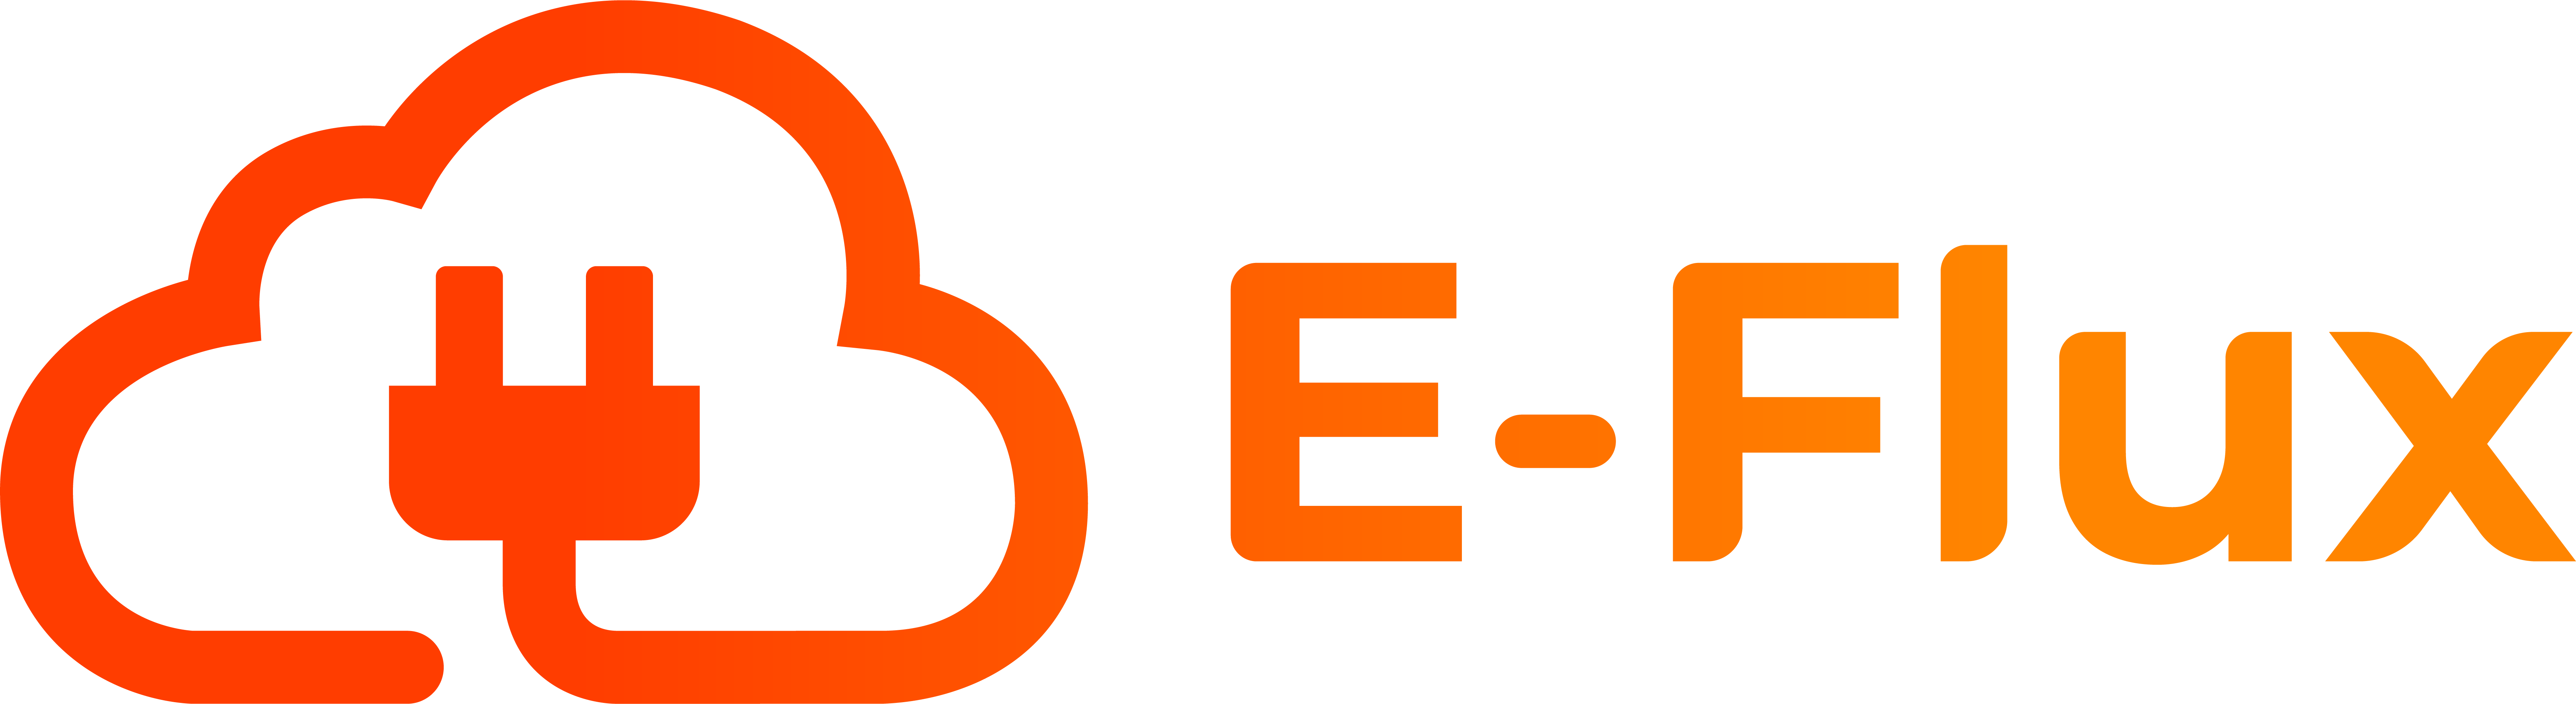 Logo van E-Flux laadpas